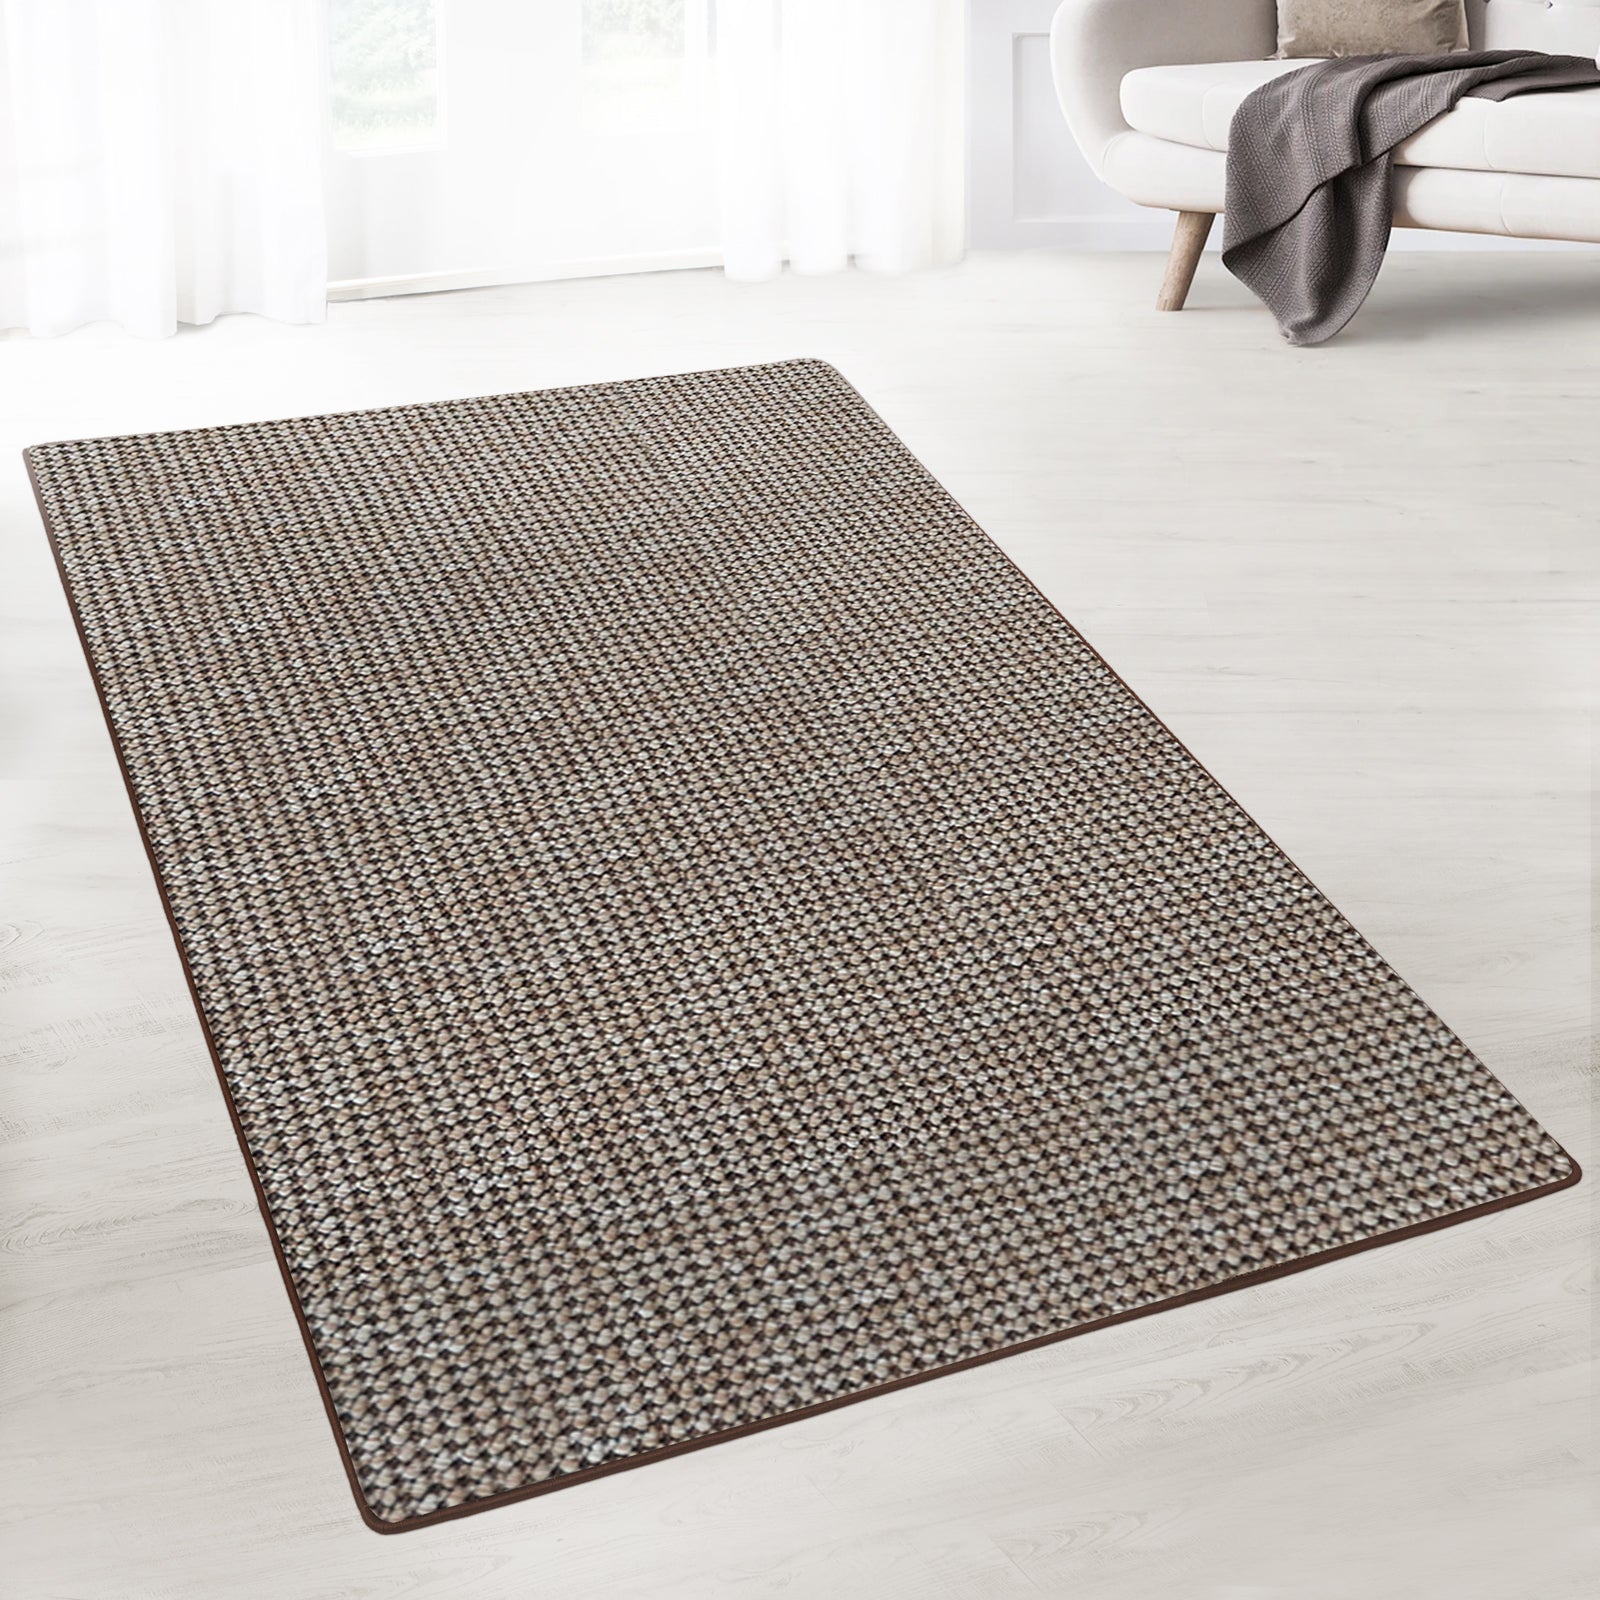 Moderne Teppiche in Sonderformen für Sie auf Maß angefertigt